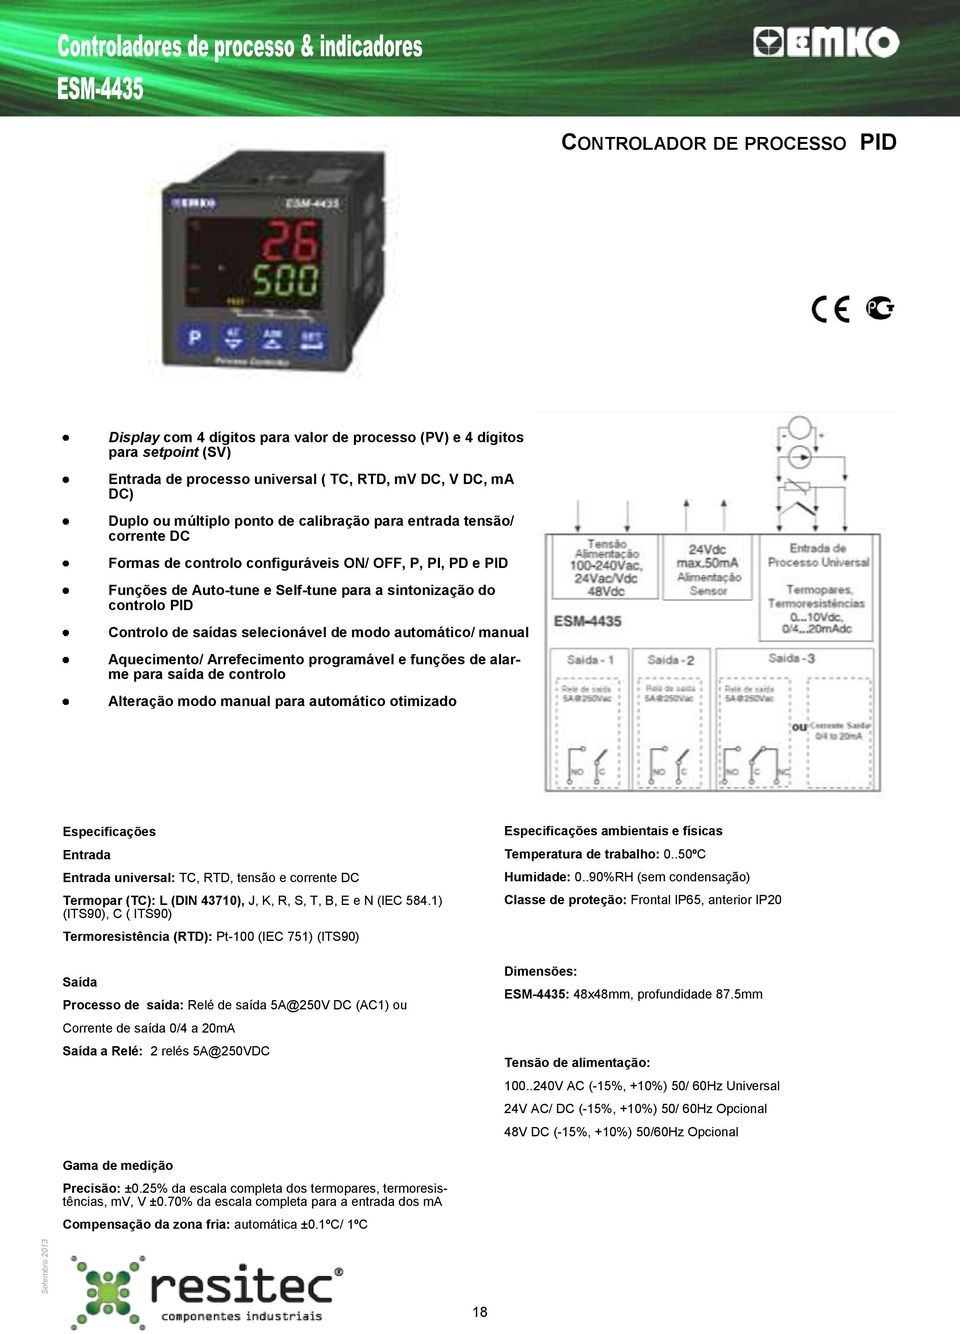 automático/ manual Aquecimento/ Arrefecimento programável e funções de alarme para saída de controlo Alteração modo manual para automático otimizado universal: TC, RTD, tensão e corrente DC Termopar